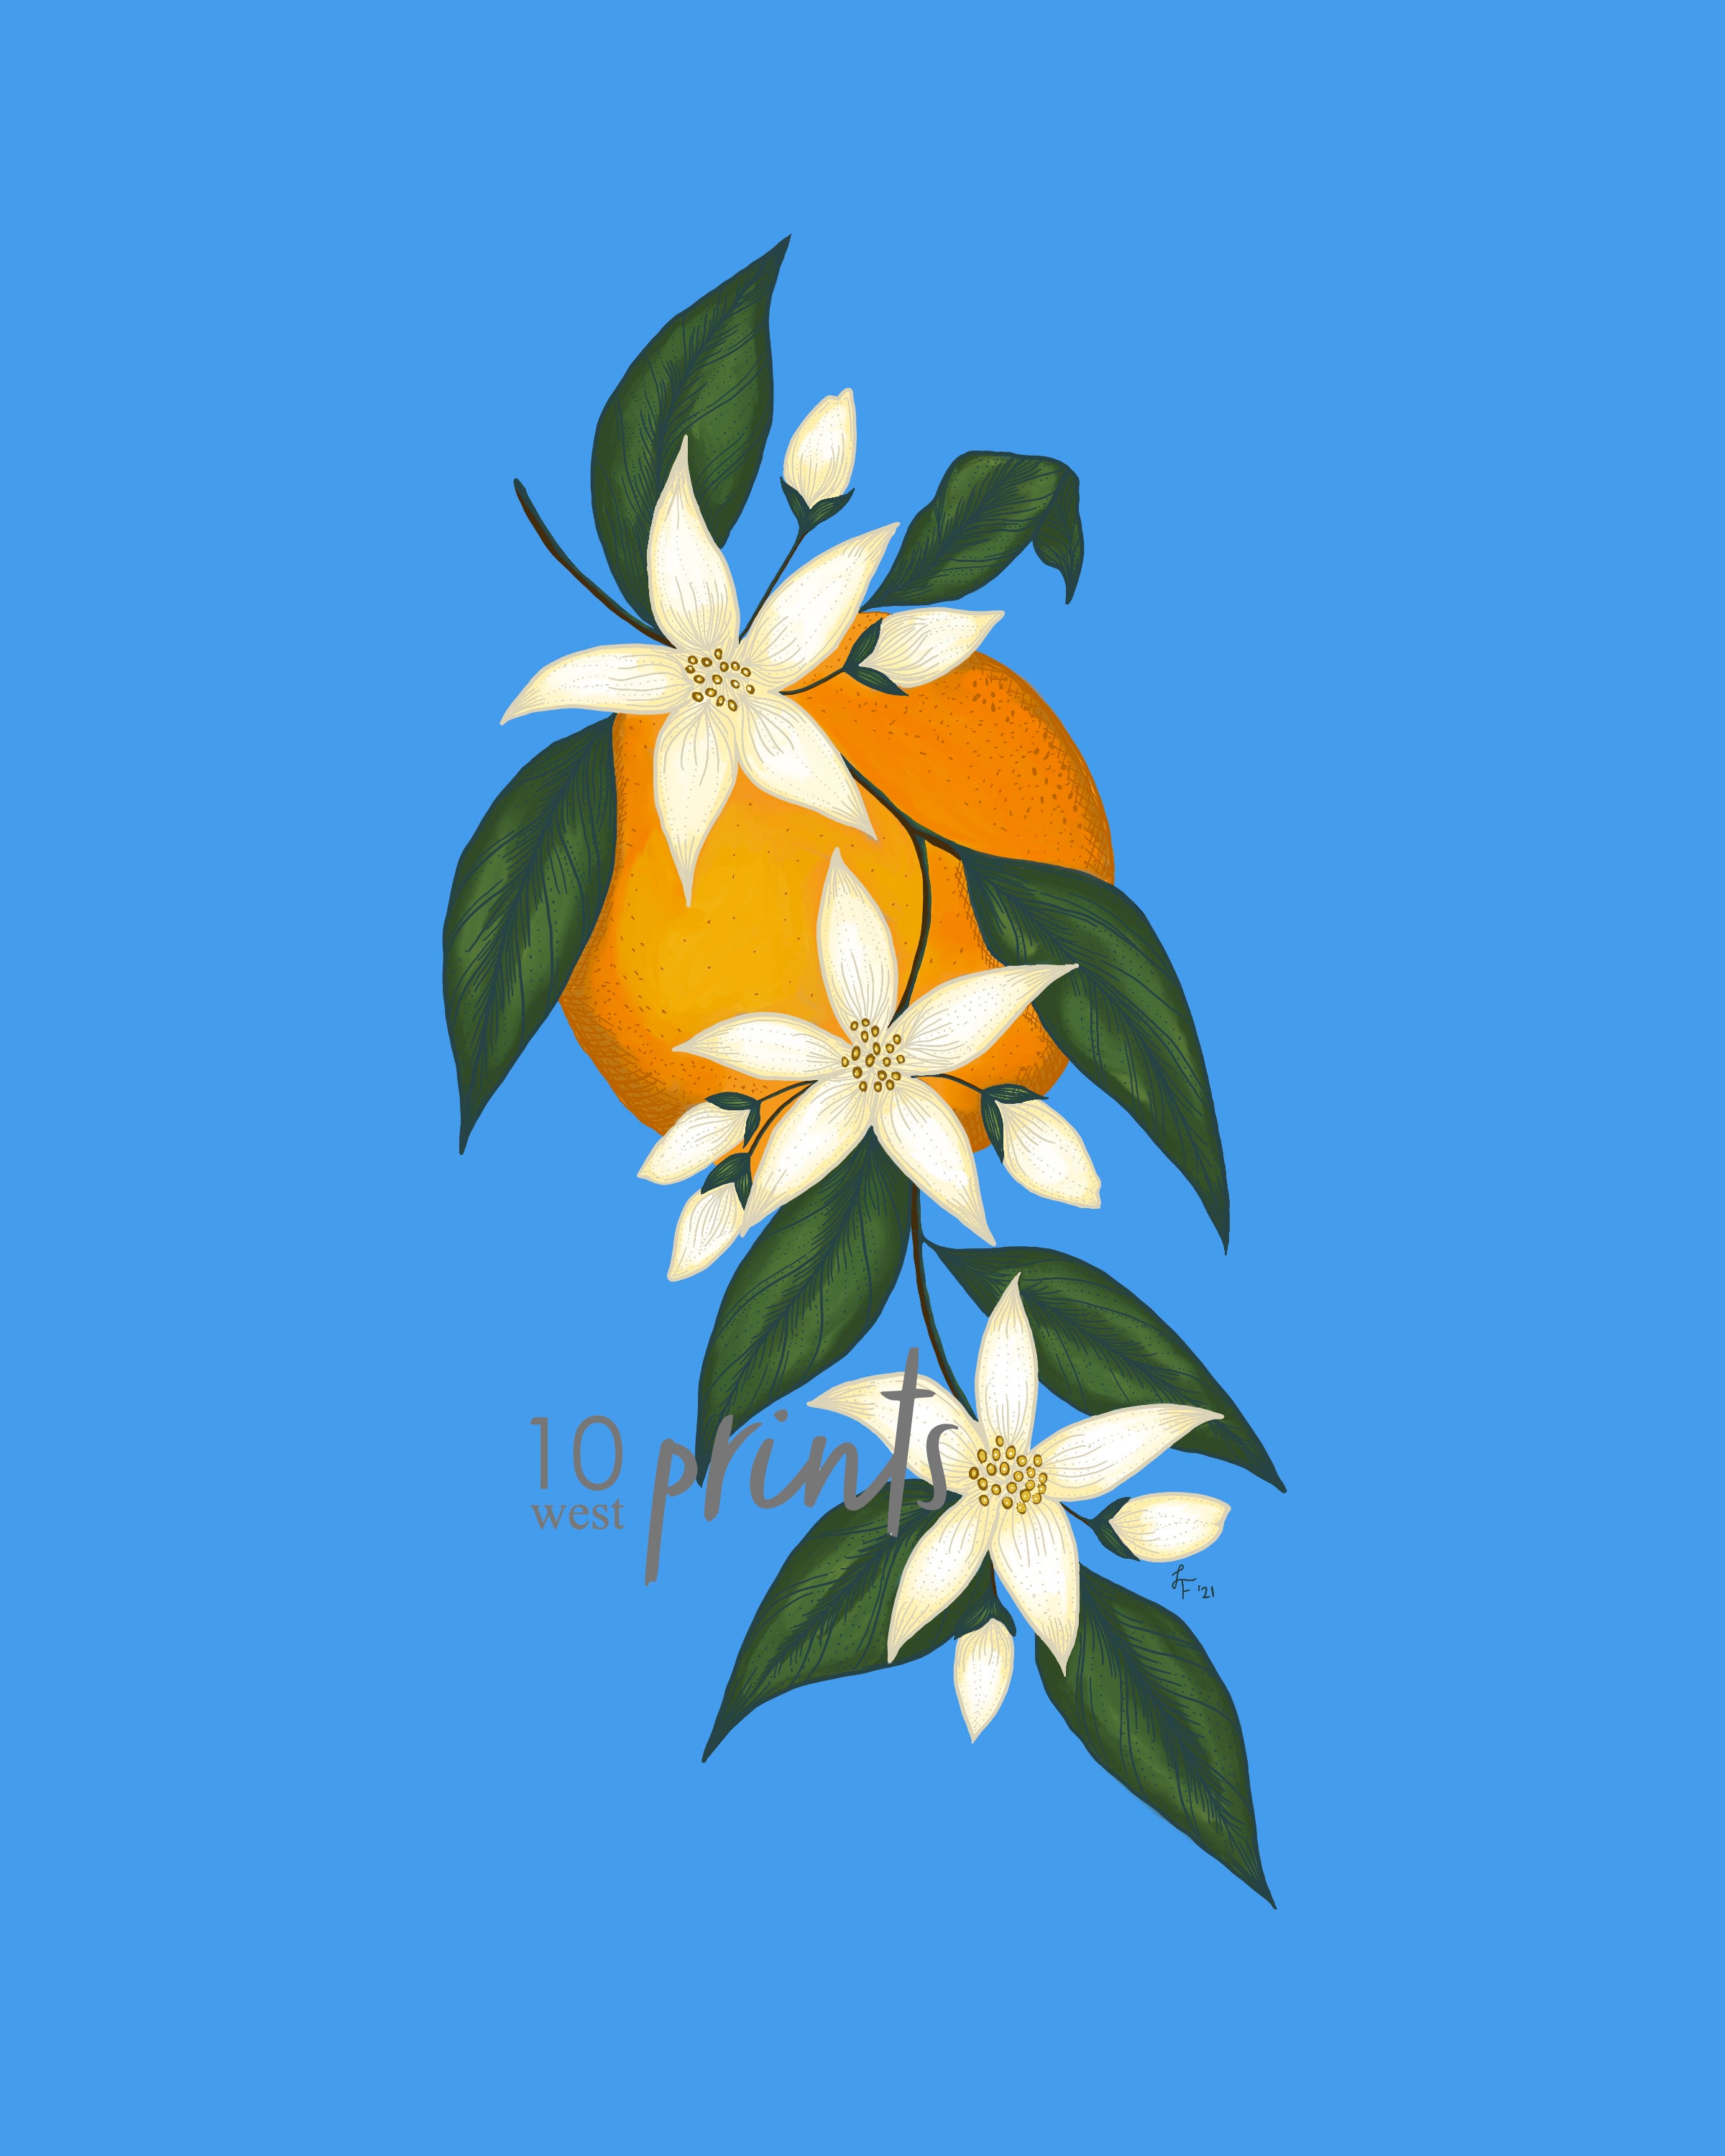 Orange Blossom Illustration / Printable / Art / Digital Download